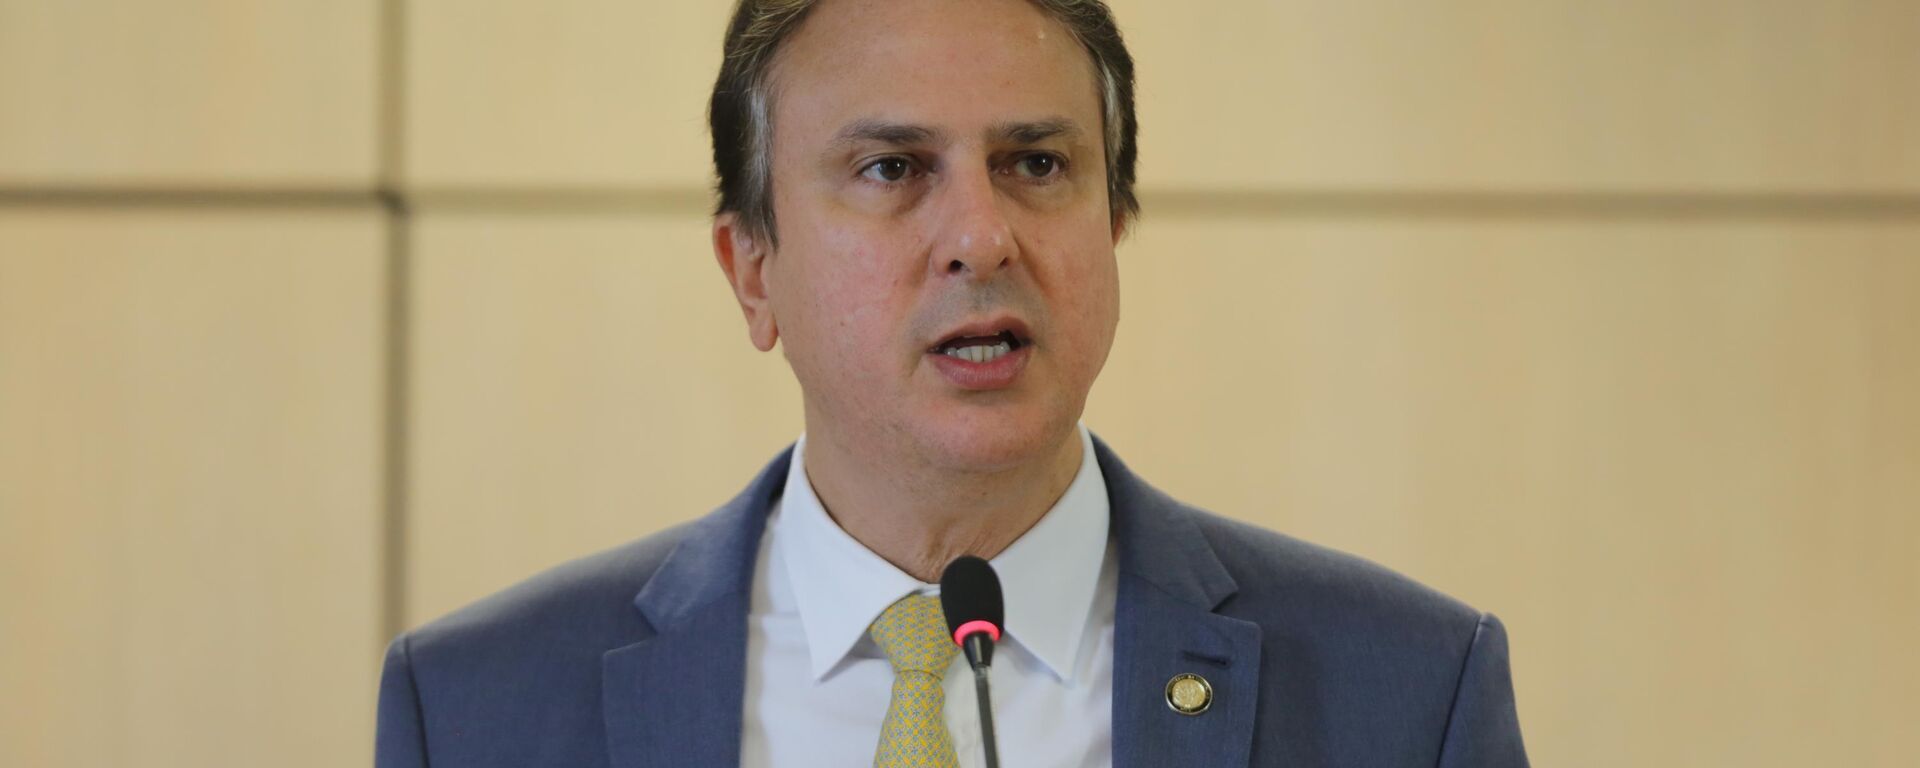 O Ministro de Estado da Educação, Camilo Santana, em Brasília (DF), em 6 de janeiro de 2023 - Sputnik Brasil, 1920, 10.01.2023